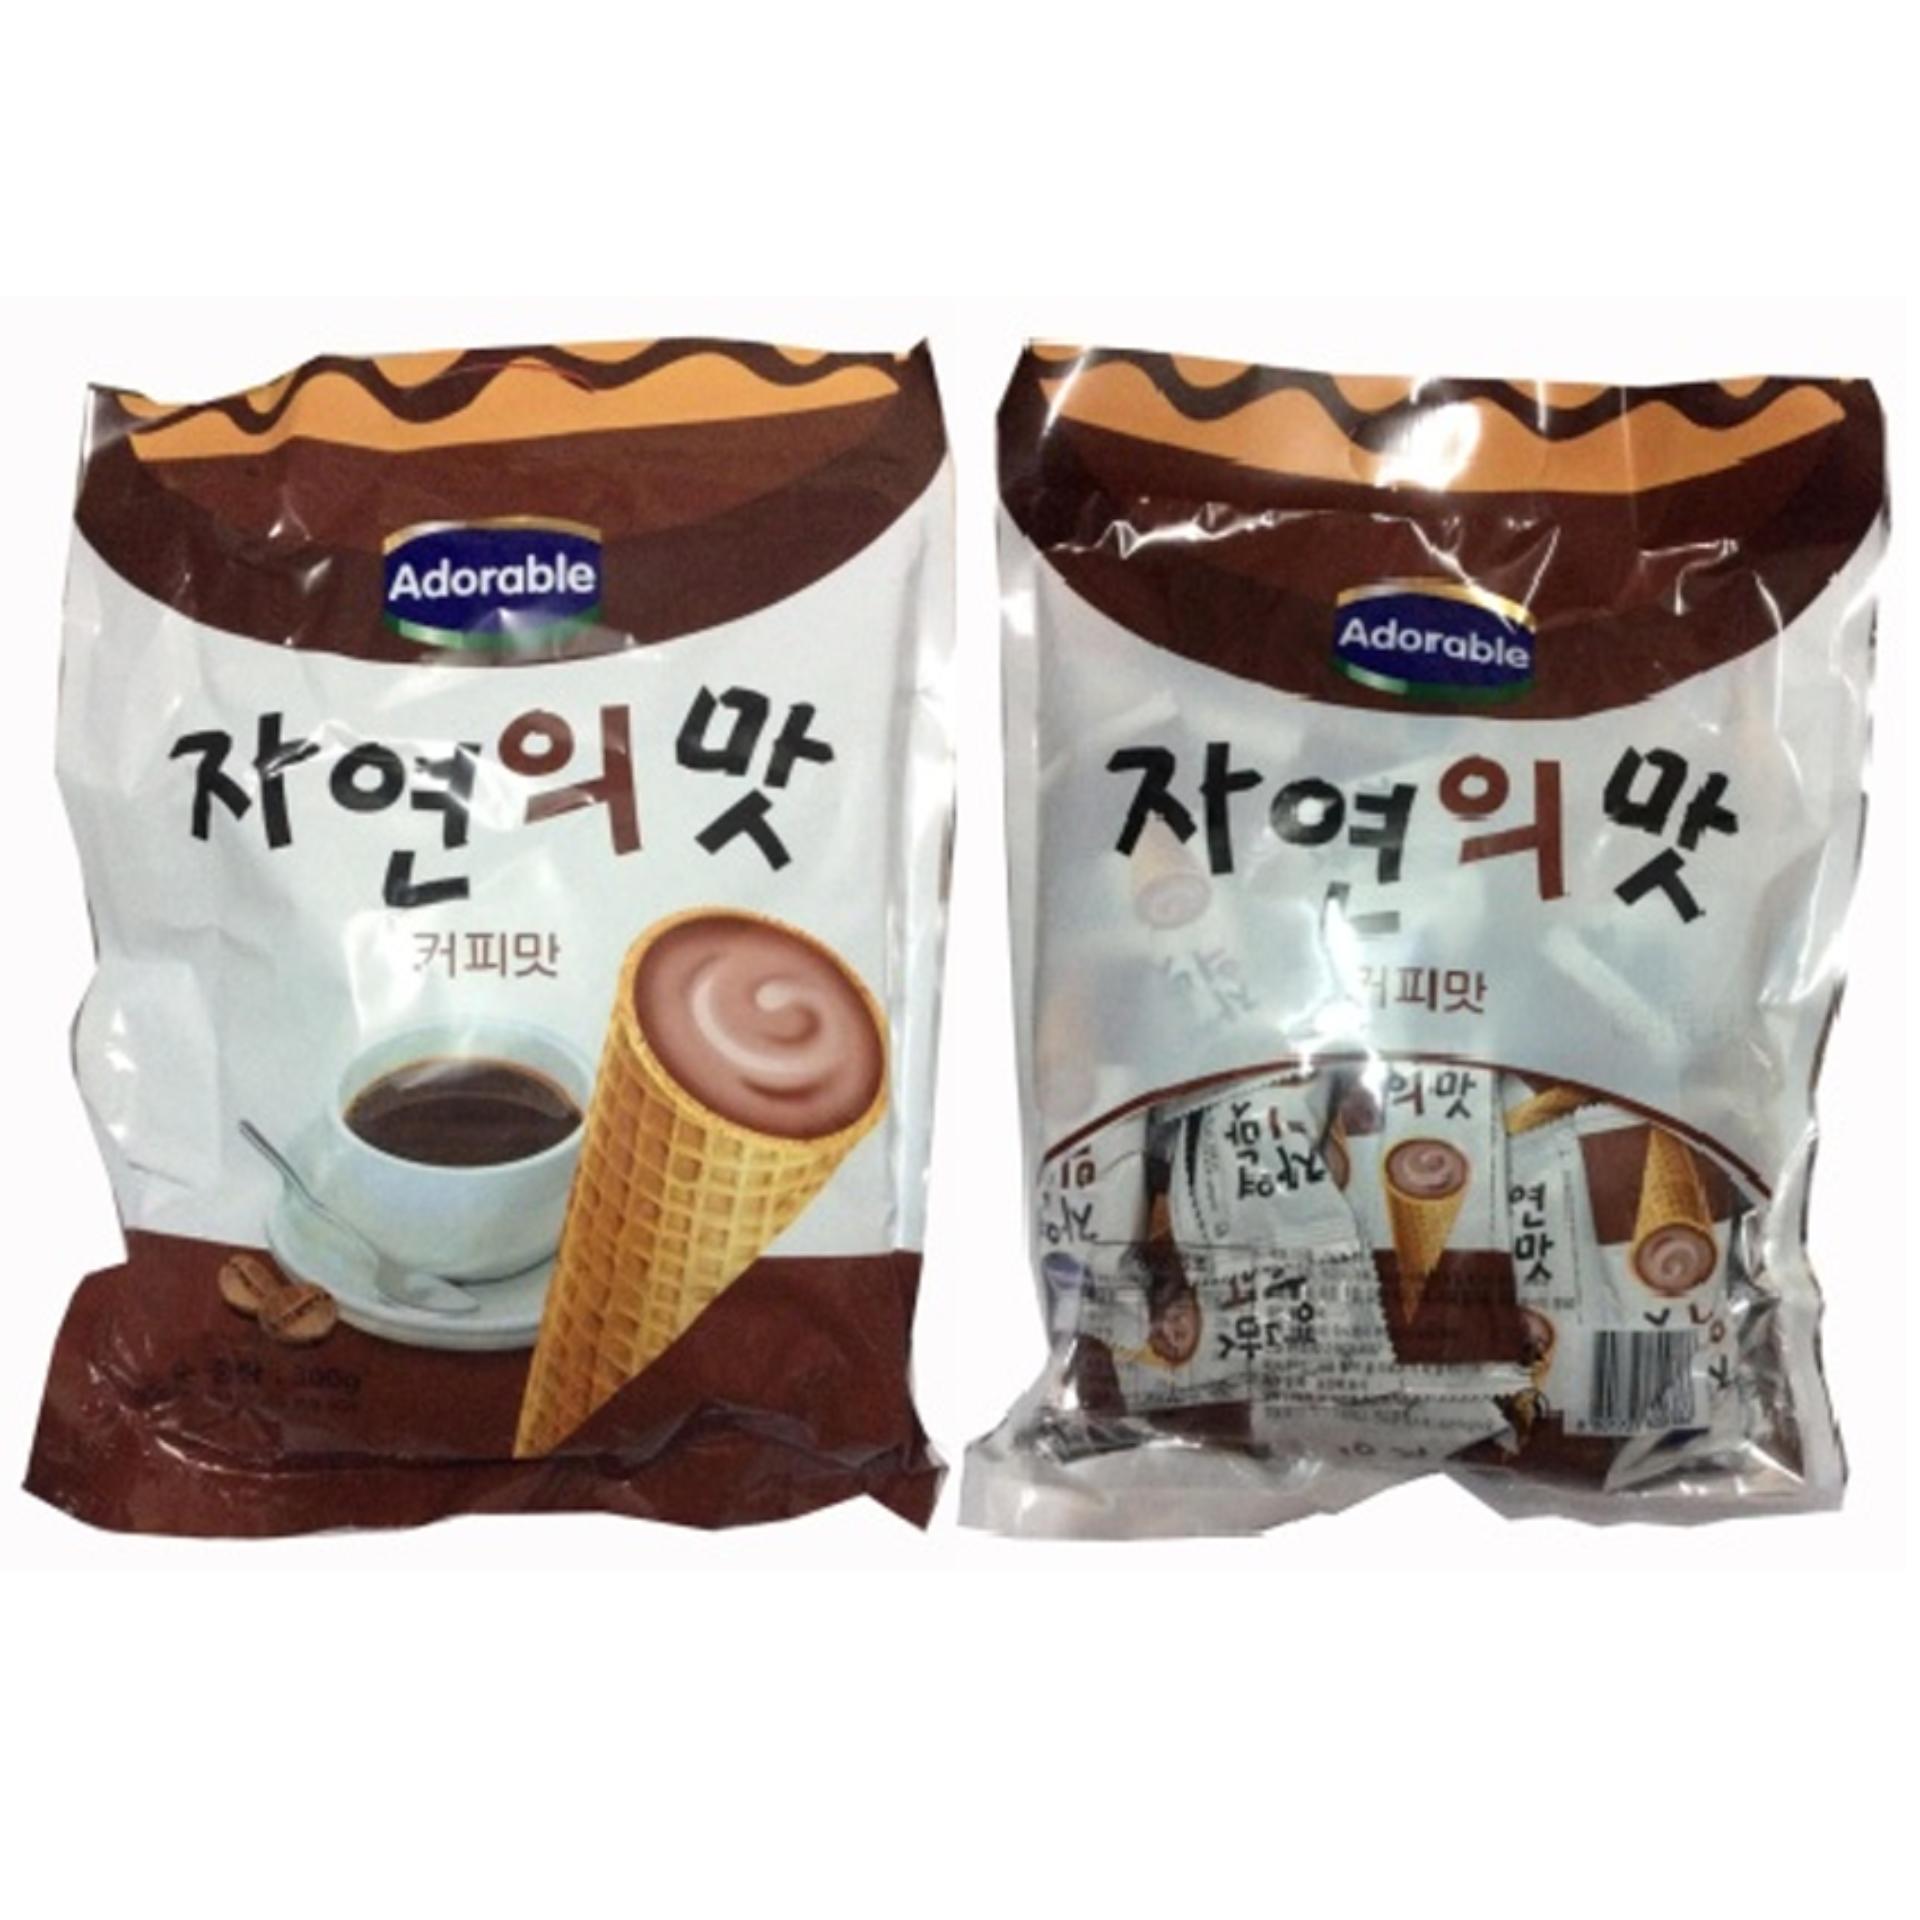 Bộ 2 Gói Bánh ốc quế Adorable (Kem Cà Phê) 300g/gói Hàn Quốc